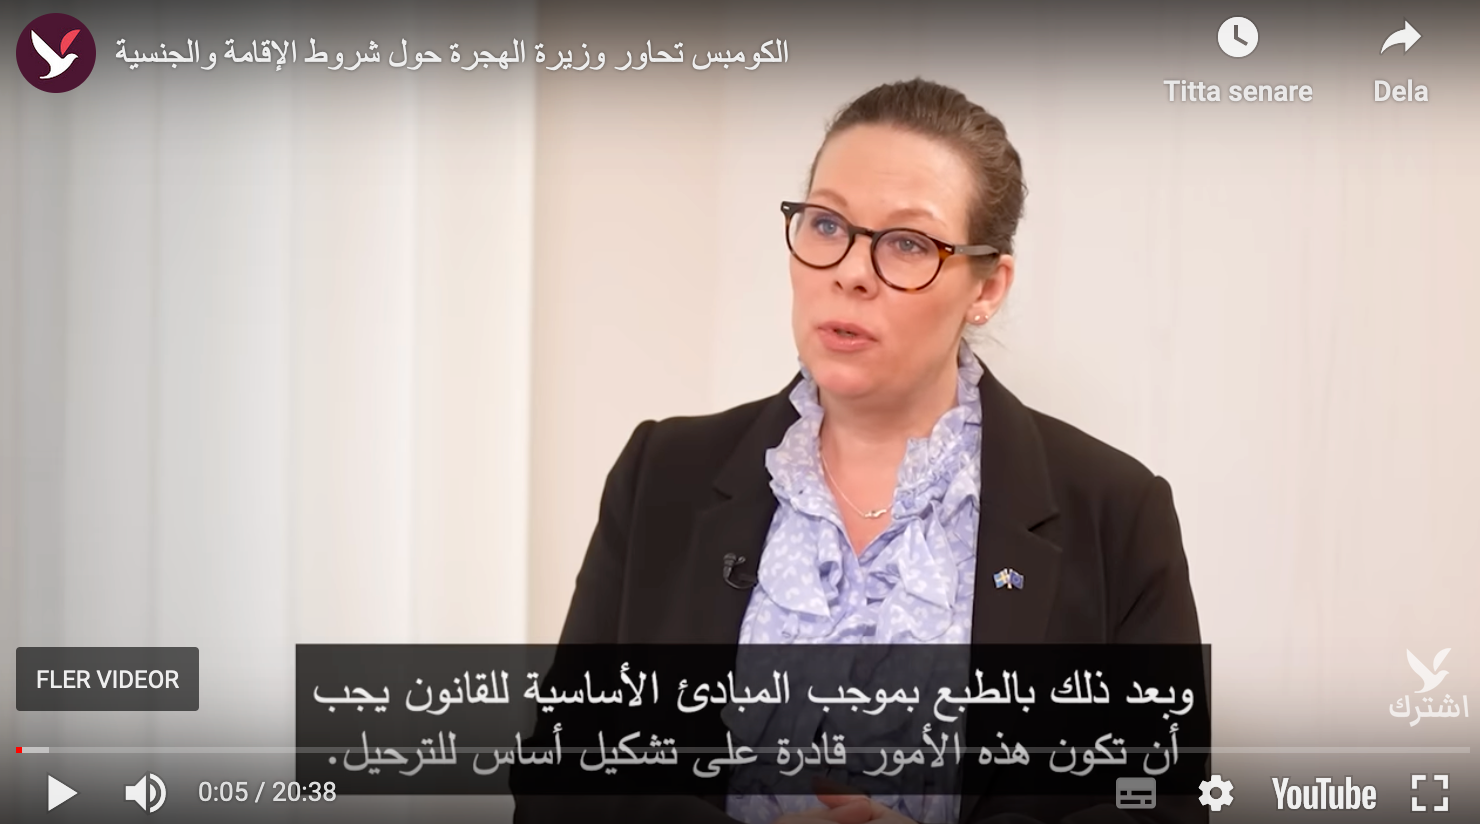 Migrationsministern blev nyligen intervjuad av Alkompis, en svensk mediekanal som fokuserar på nyheter om Sverige och samhällsinformation på arabiska. 